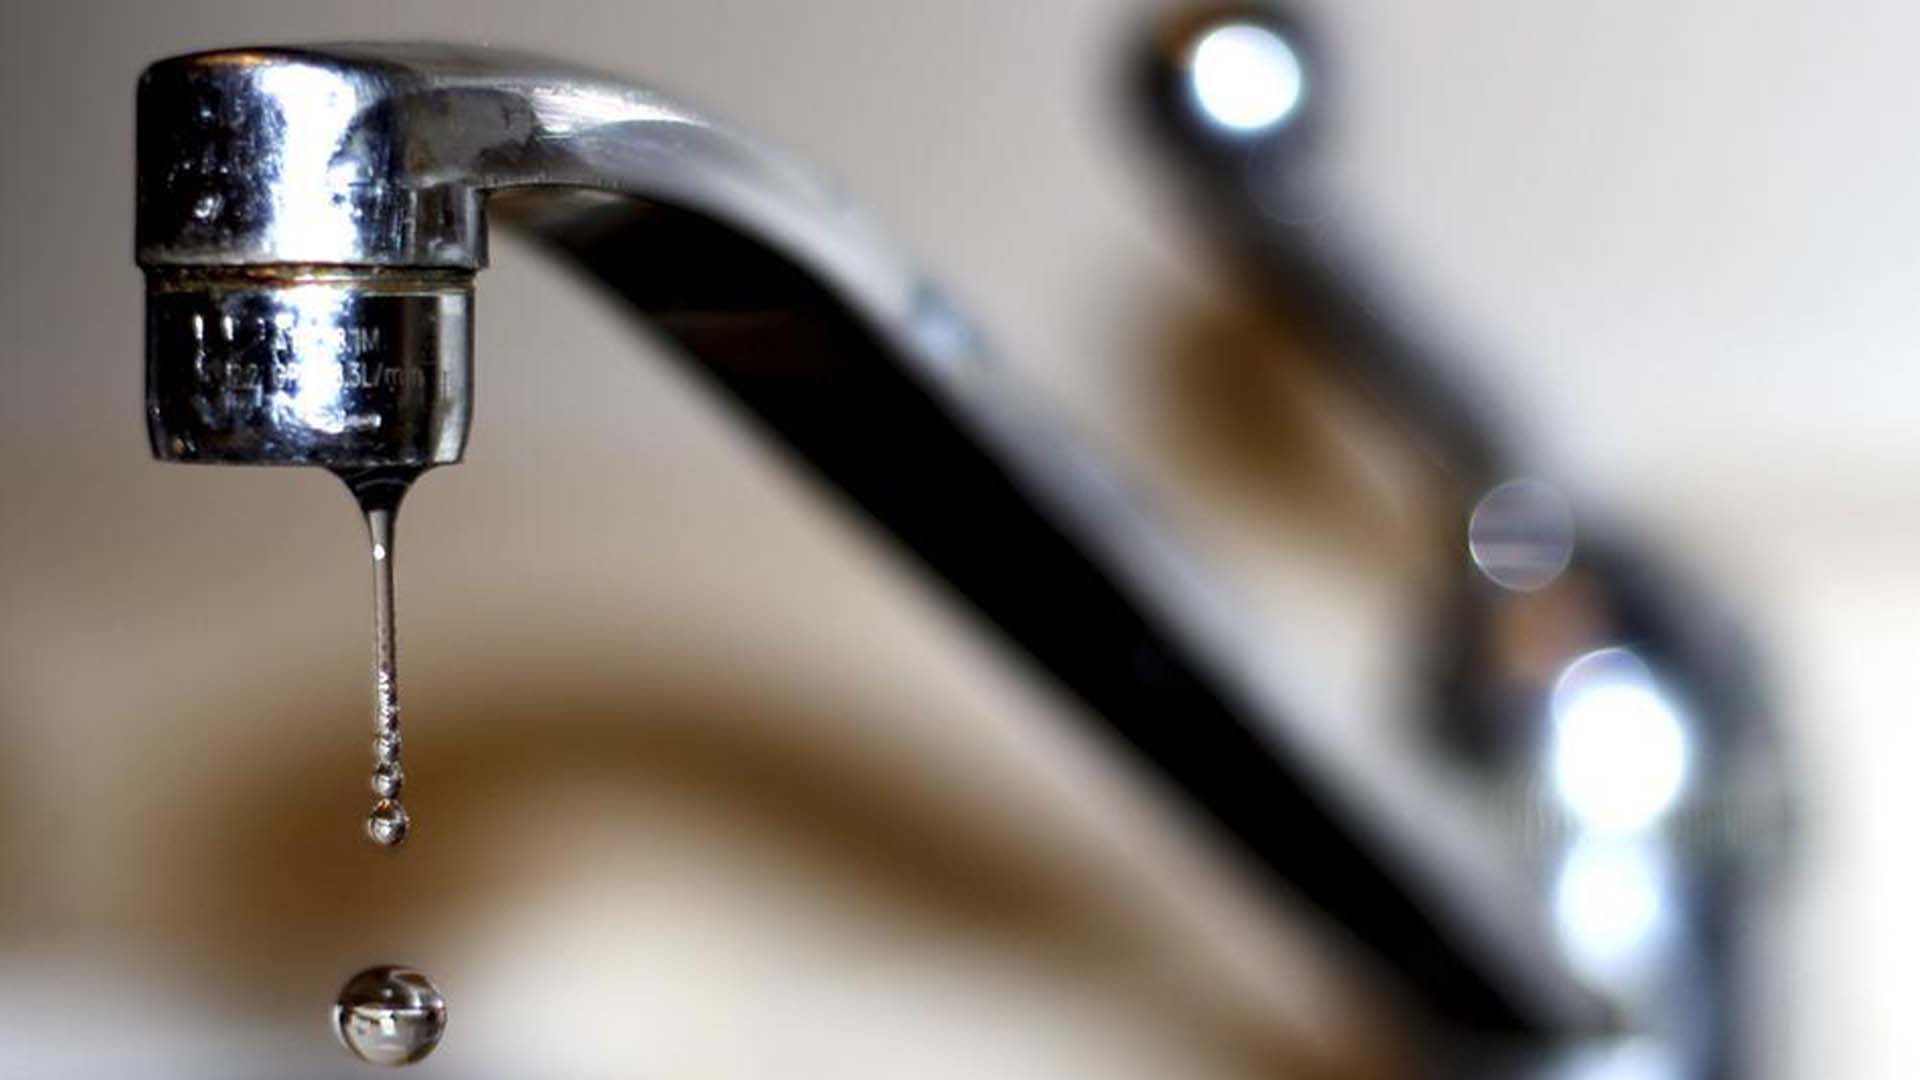 Des tests sont menés sur la qualité de l'eau du puits artésien de la municipalité de Sainte-Cécile-de-Milton.